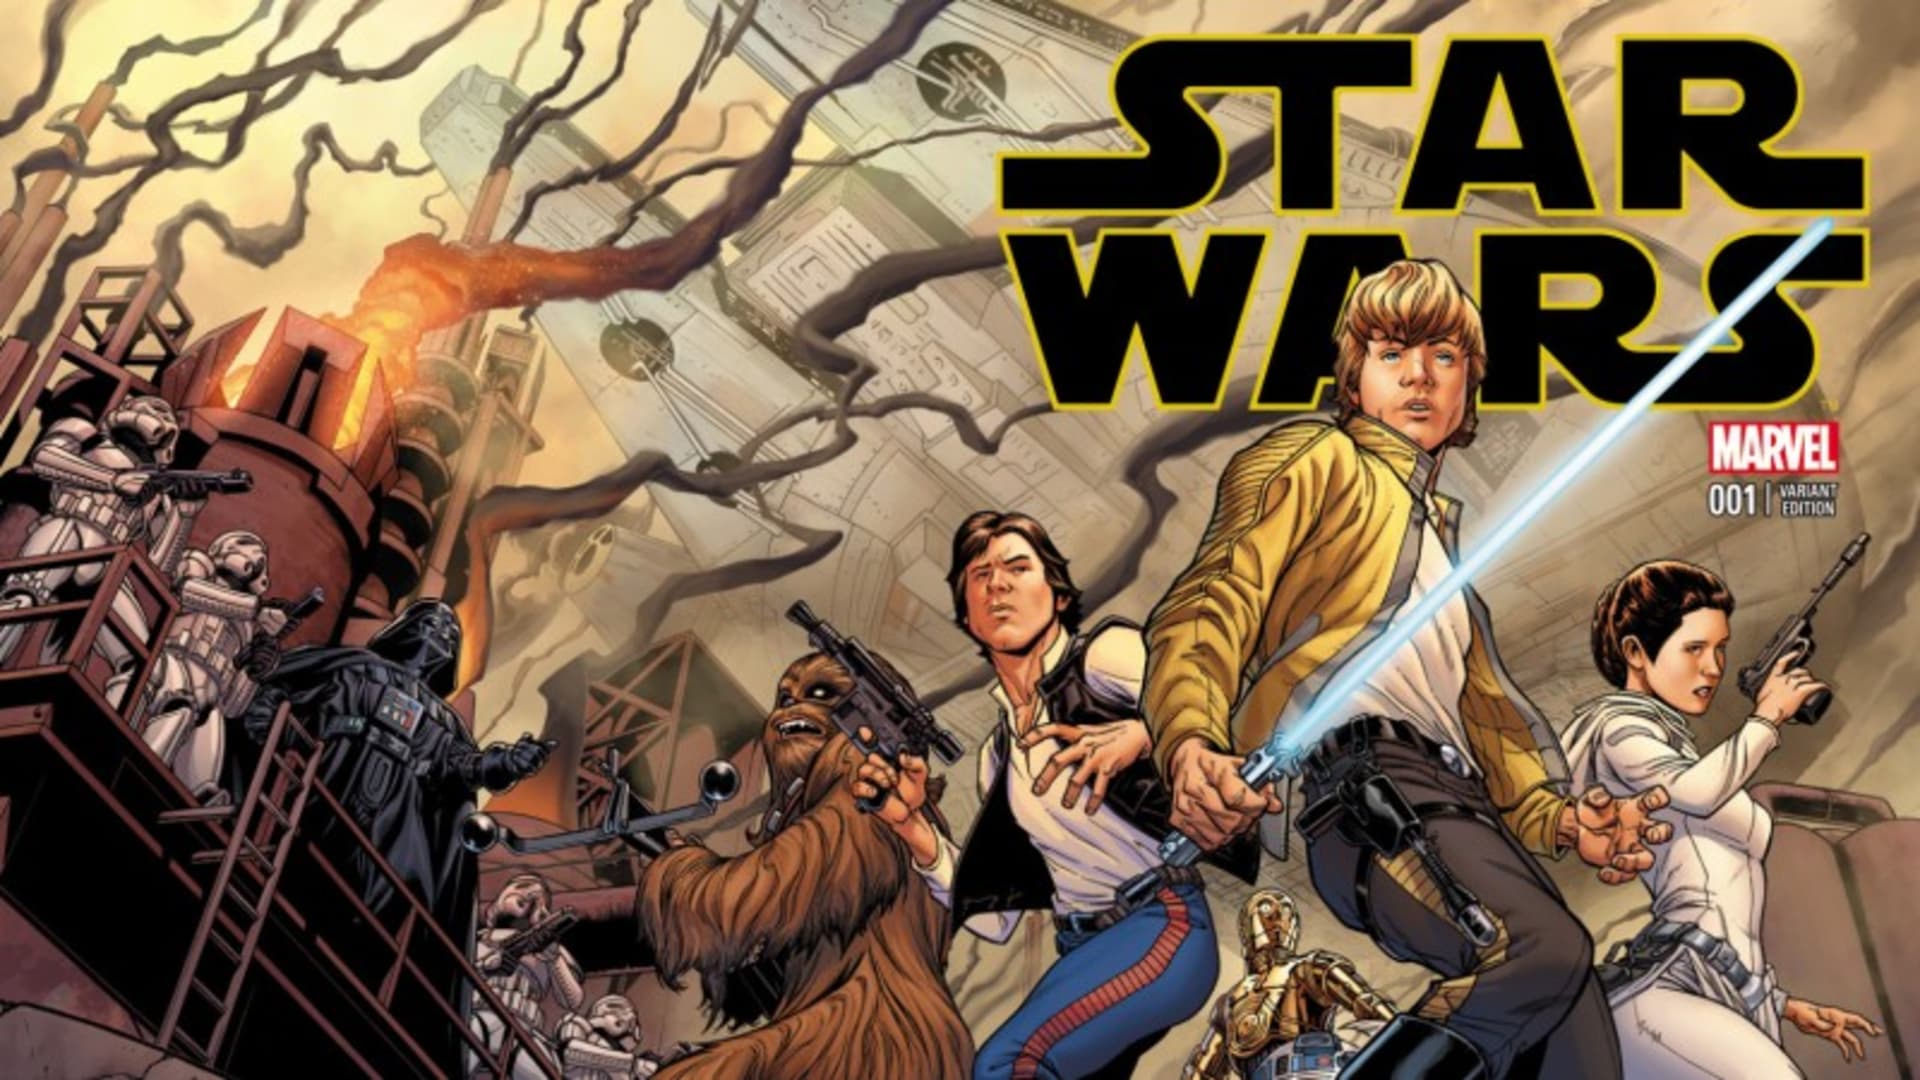 Starší comicsy Star Wars se nedávno odsunuly pod banner Legends - mimo hlavní kontinuitu filmů.